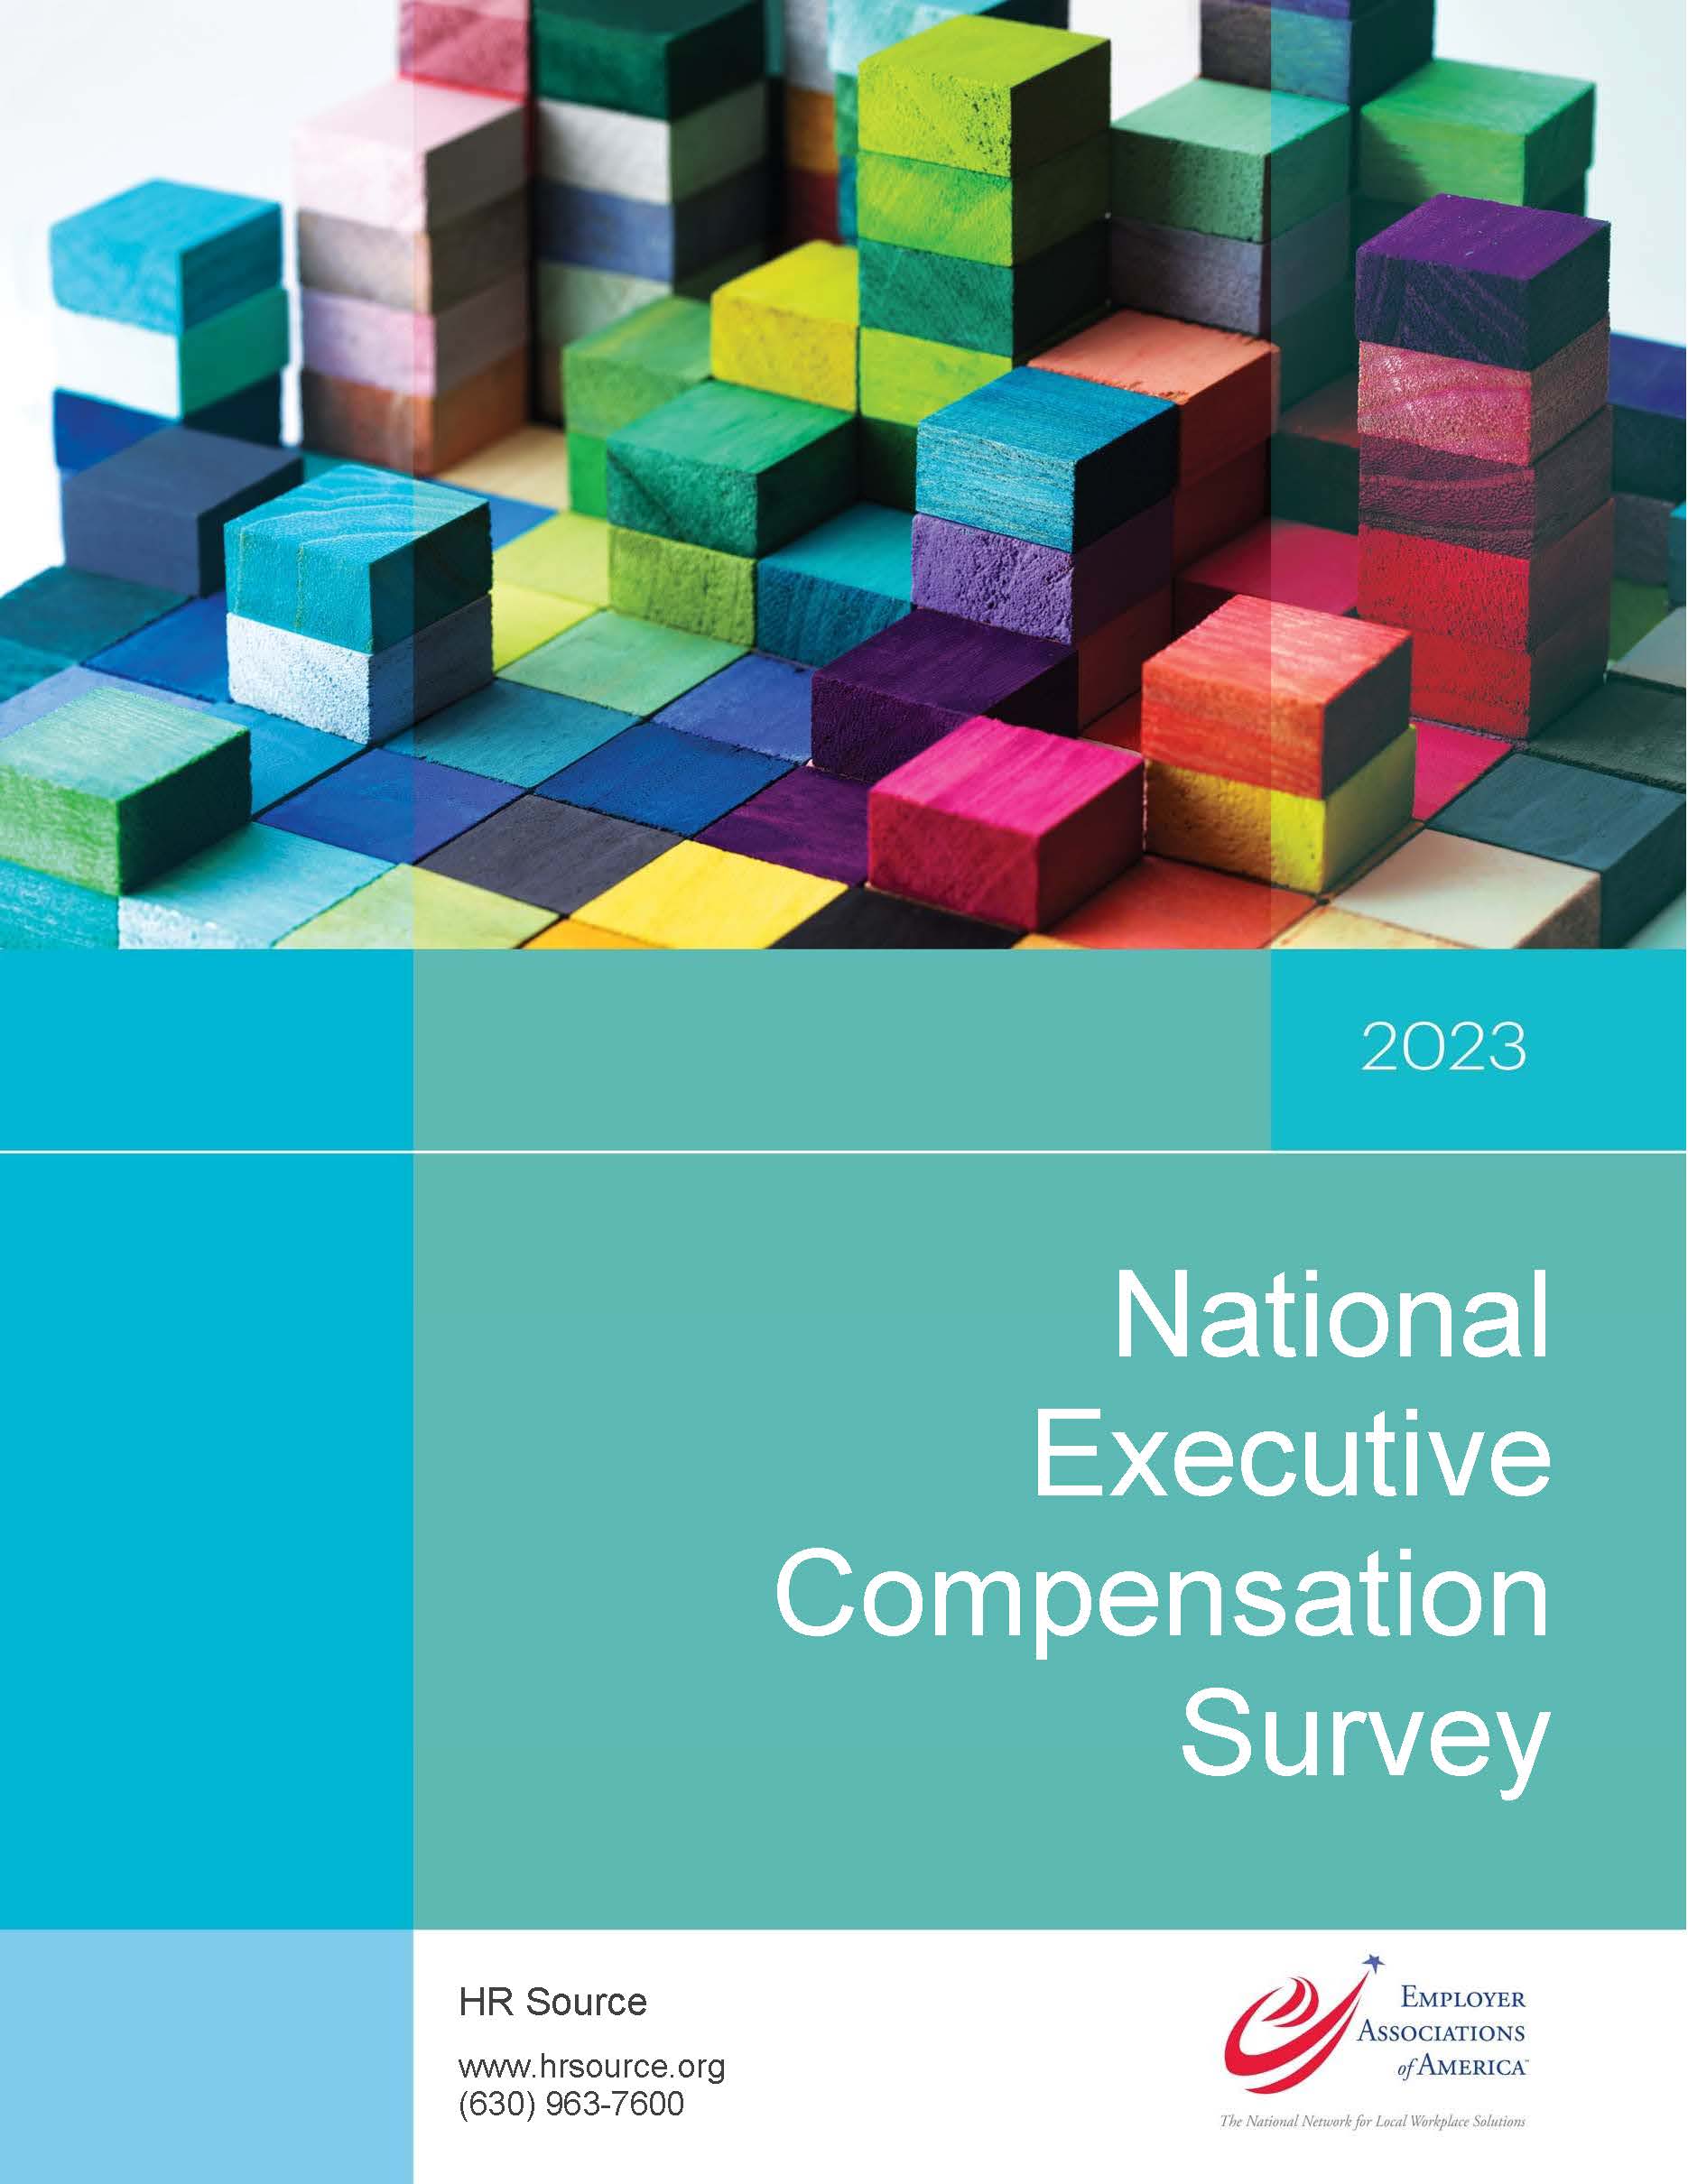 2023 National Executive Compensation Survey - Questionnaire Cover